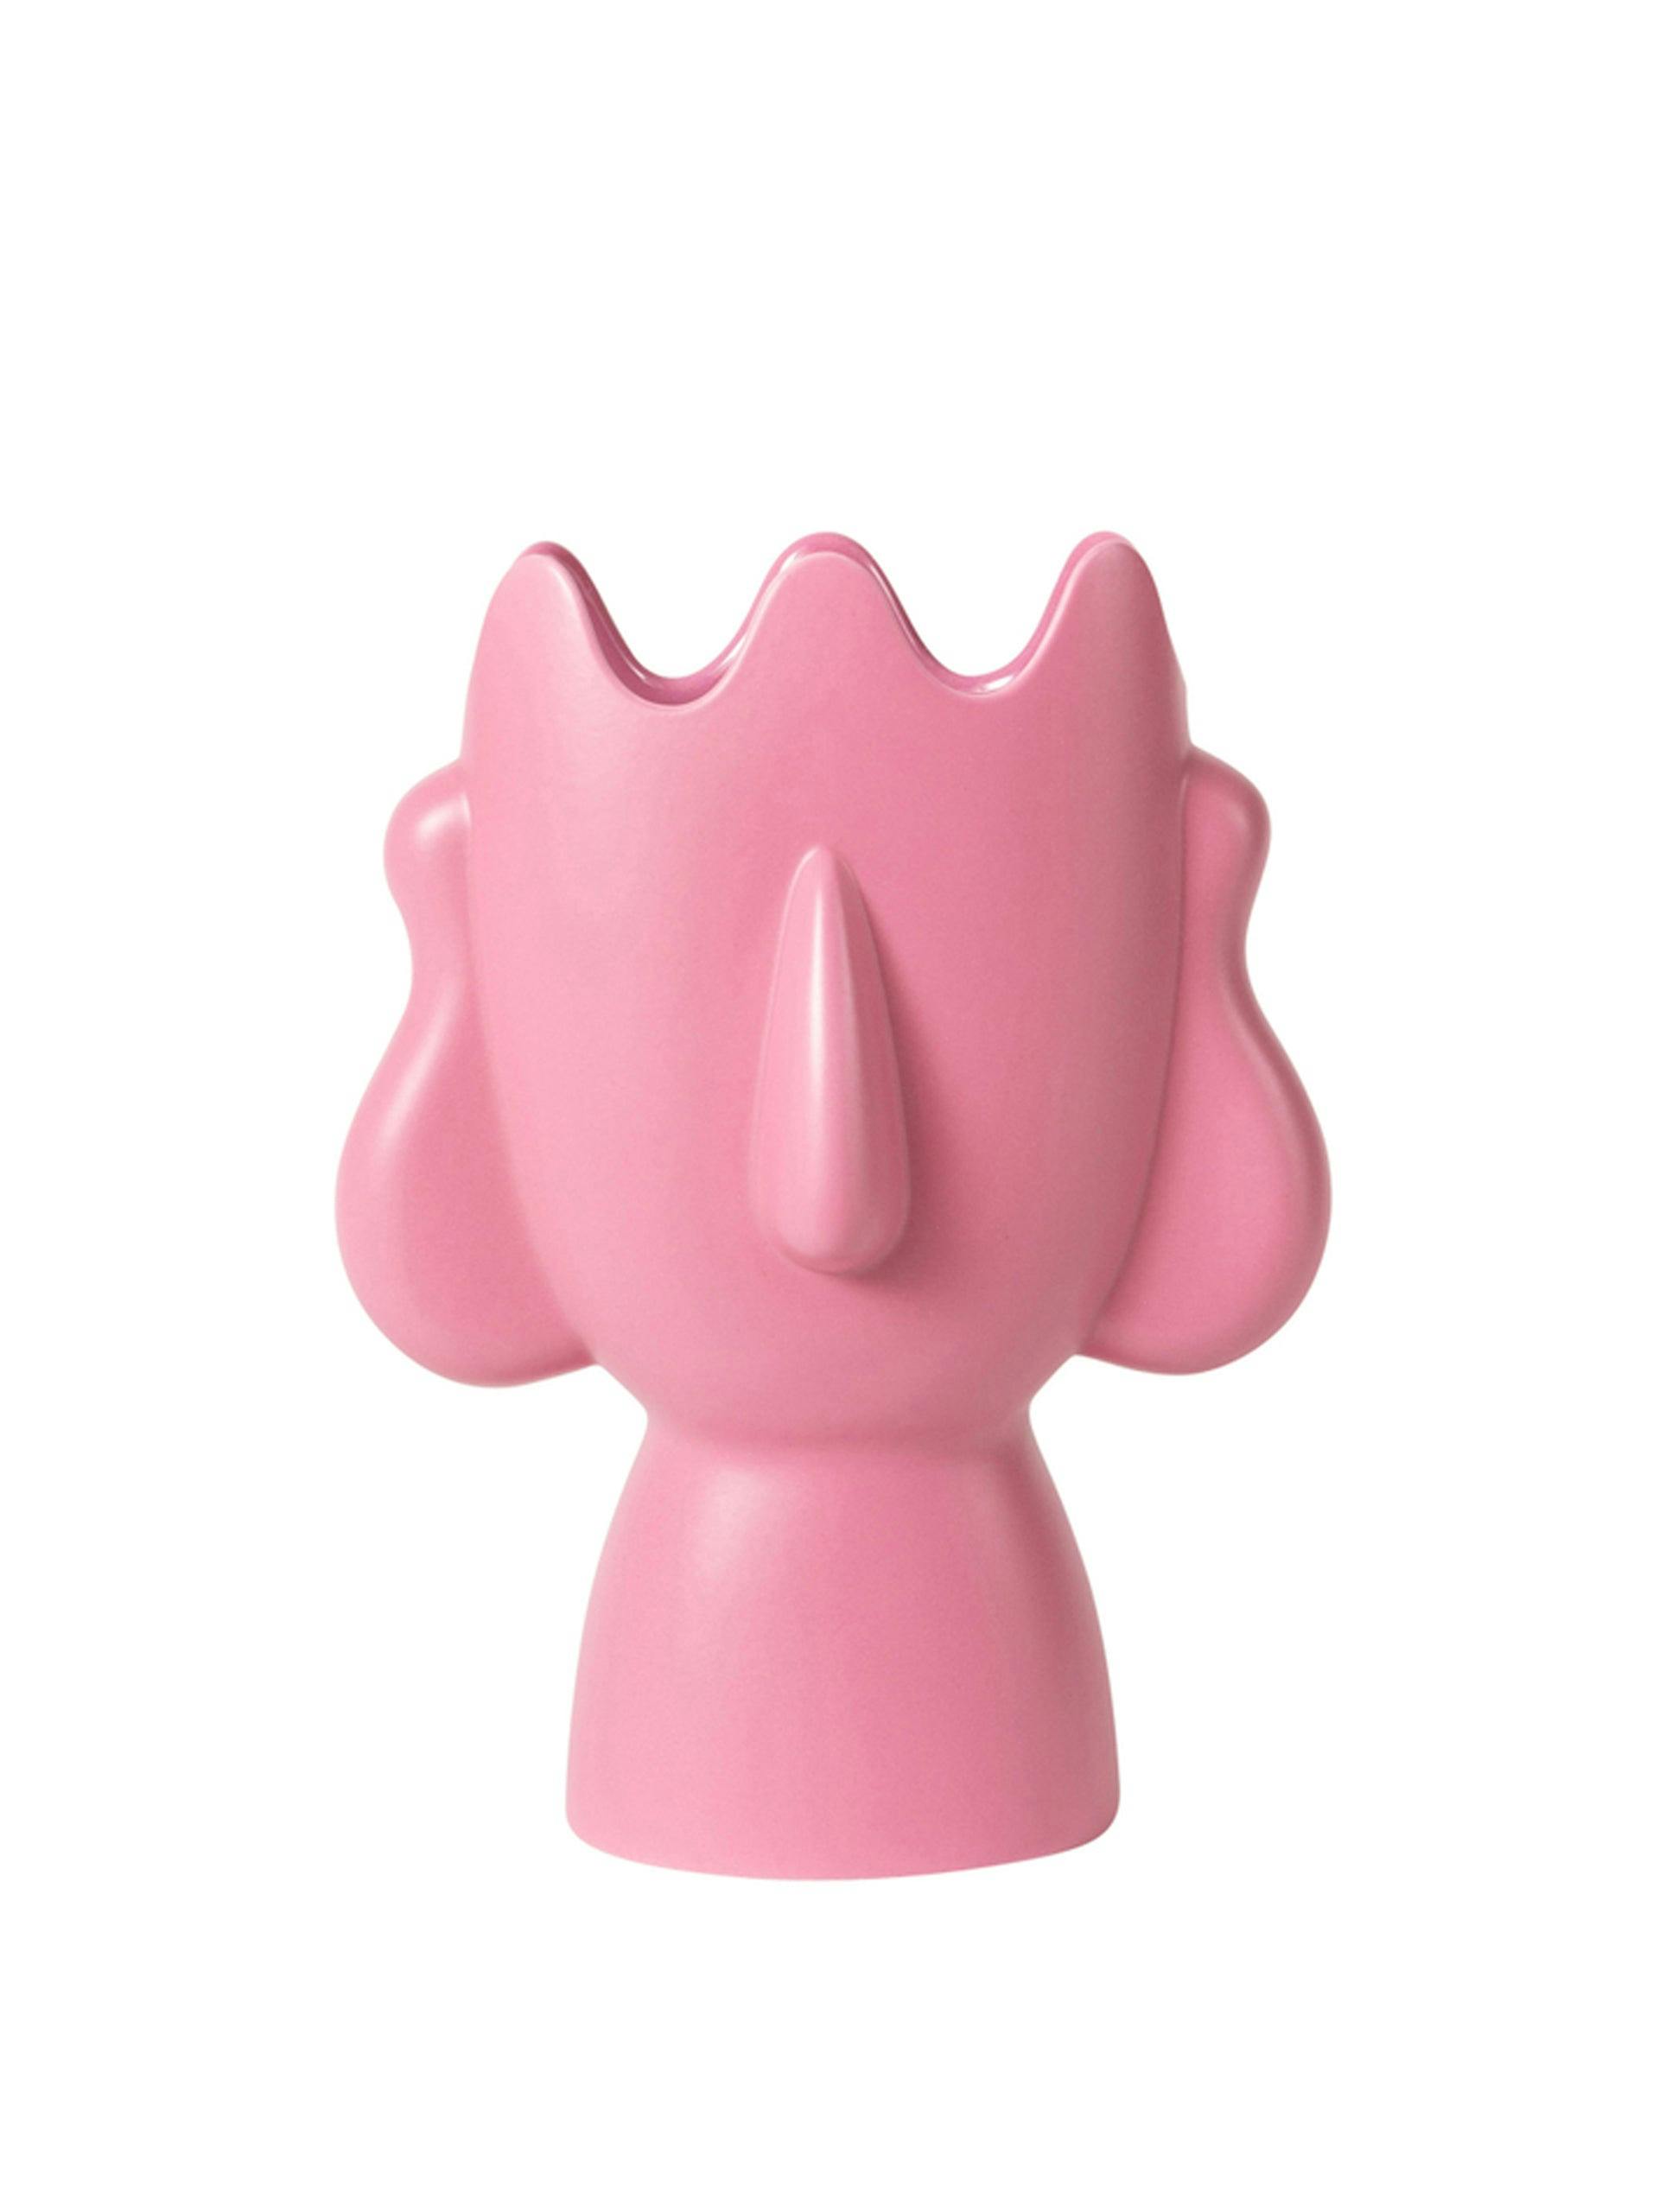 Diavoletti pink face vase